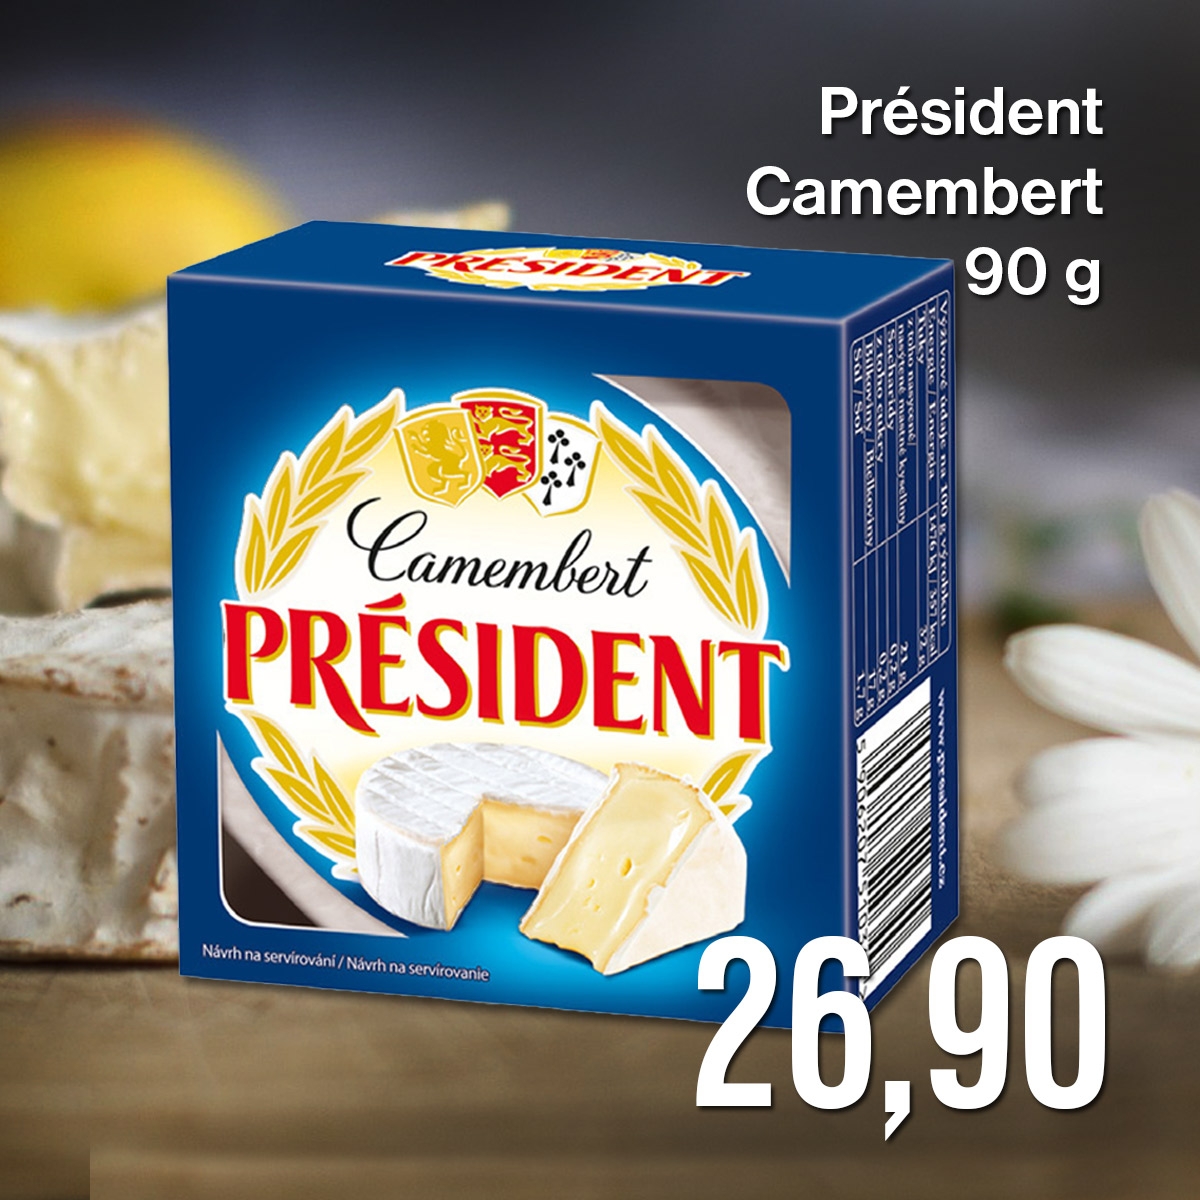 Président Camembert 90 g